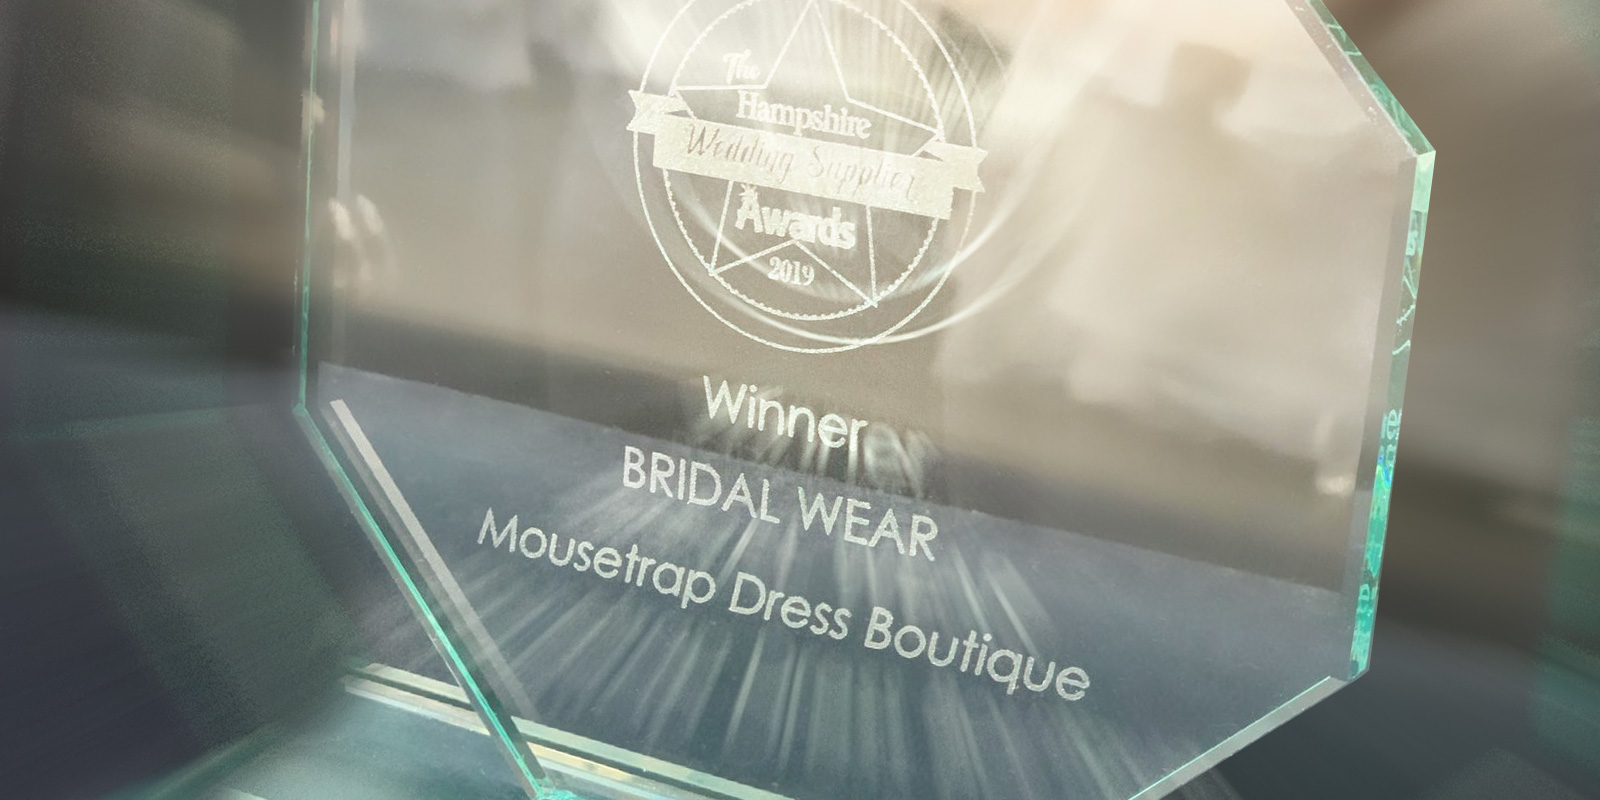 Hampshire Wedding Supplier Best in Bridalwear Winner 2019 & TWIA Best in Bridalwear Winner 2020